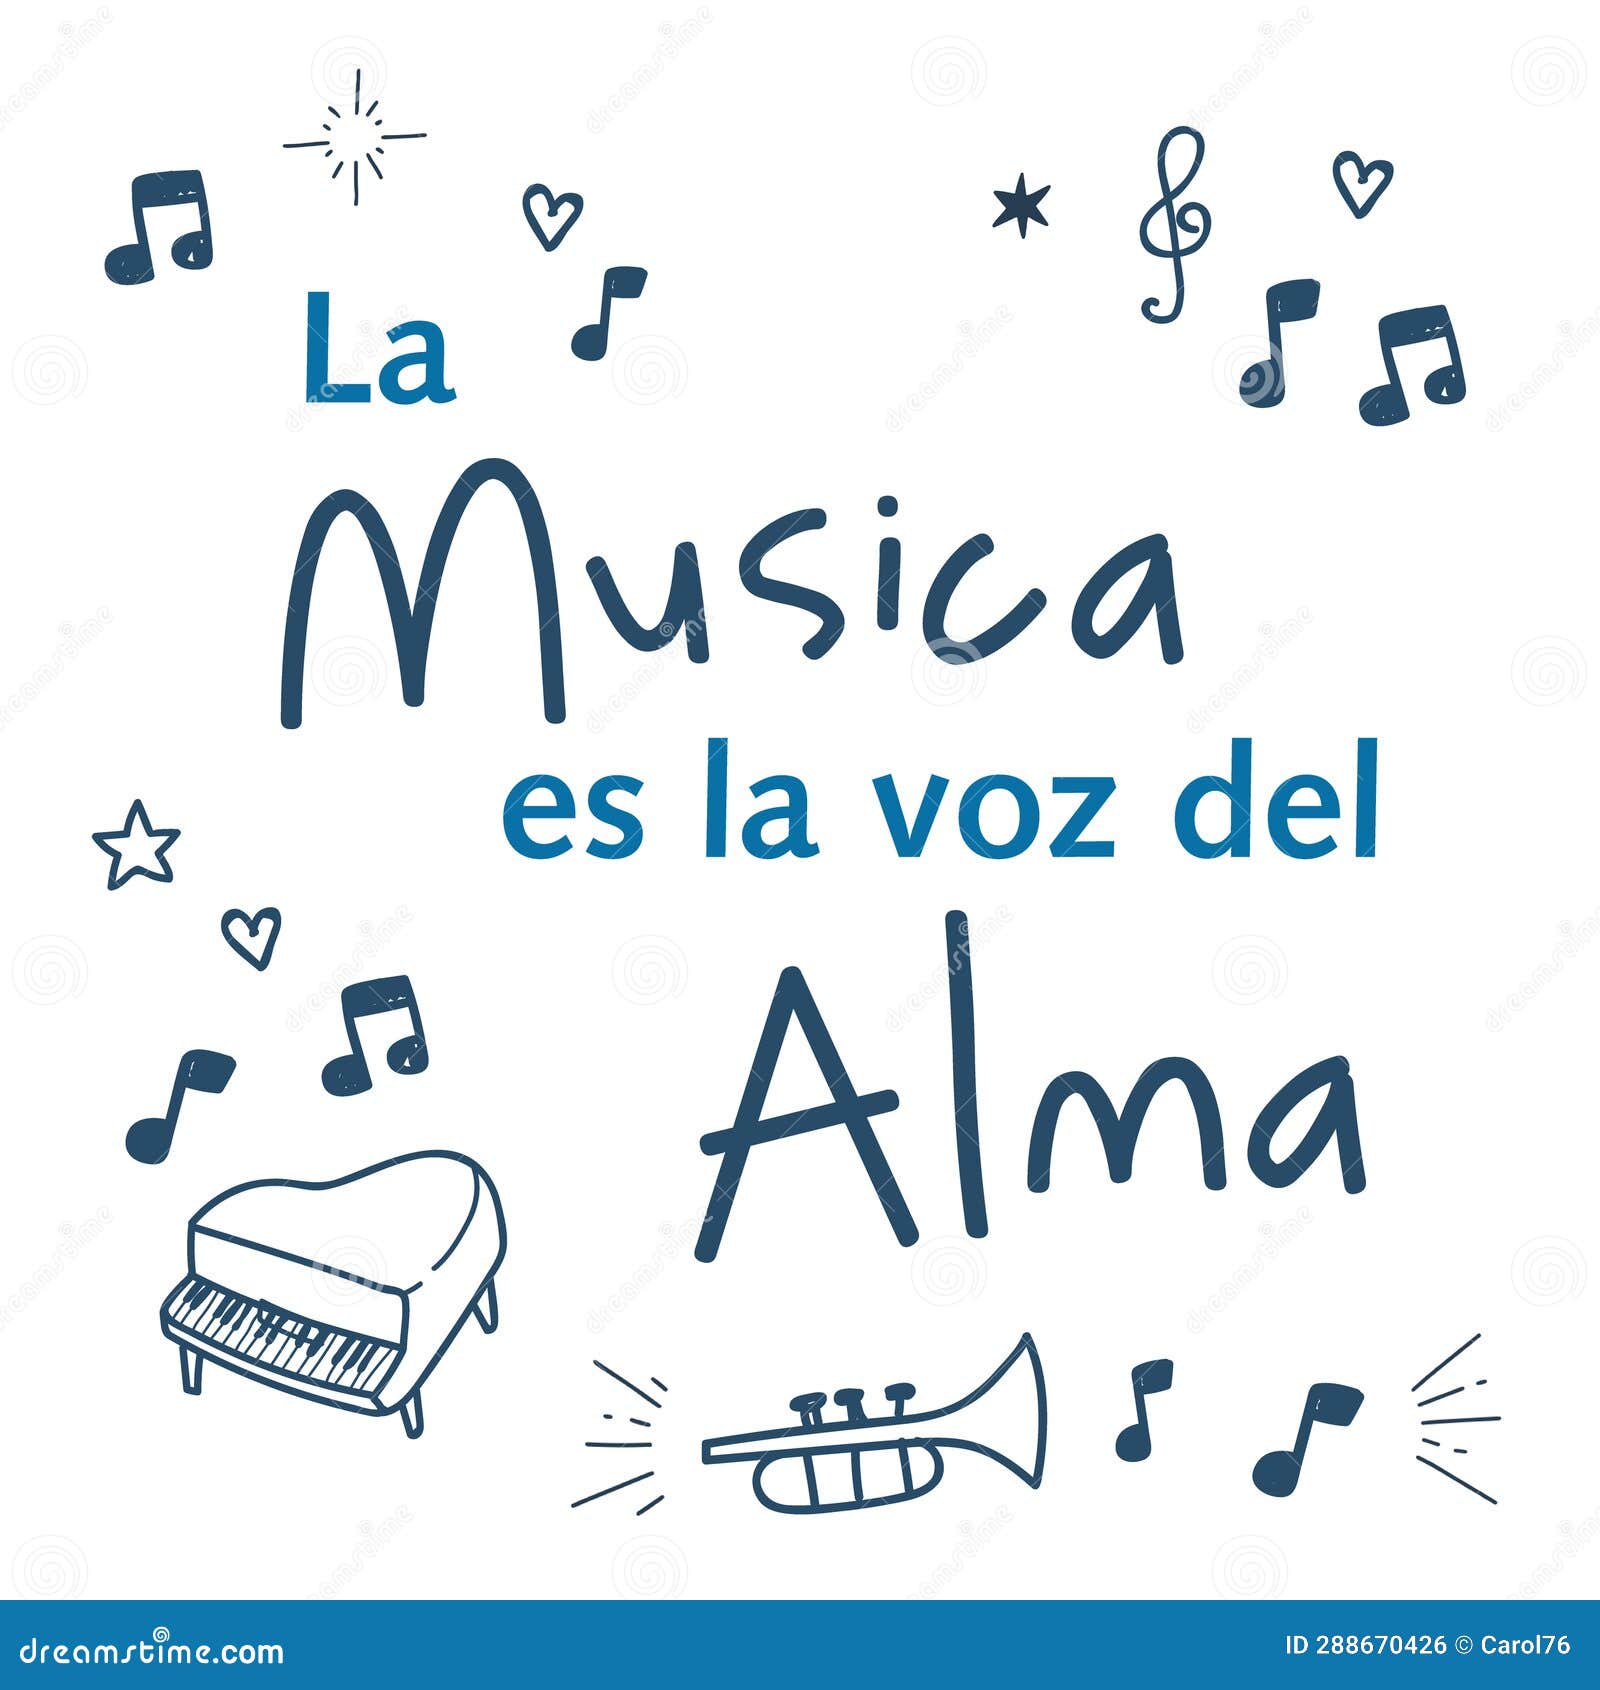 hand drawn motivational and inspirational quote in spanish: la musica es la voz del alma.